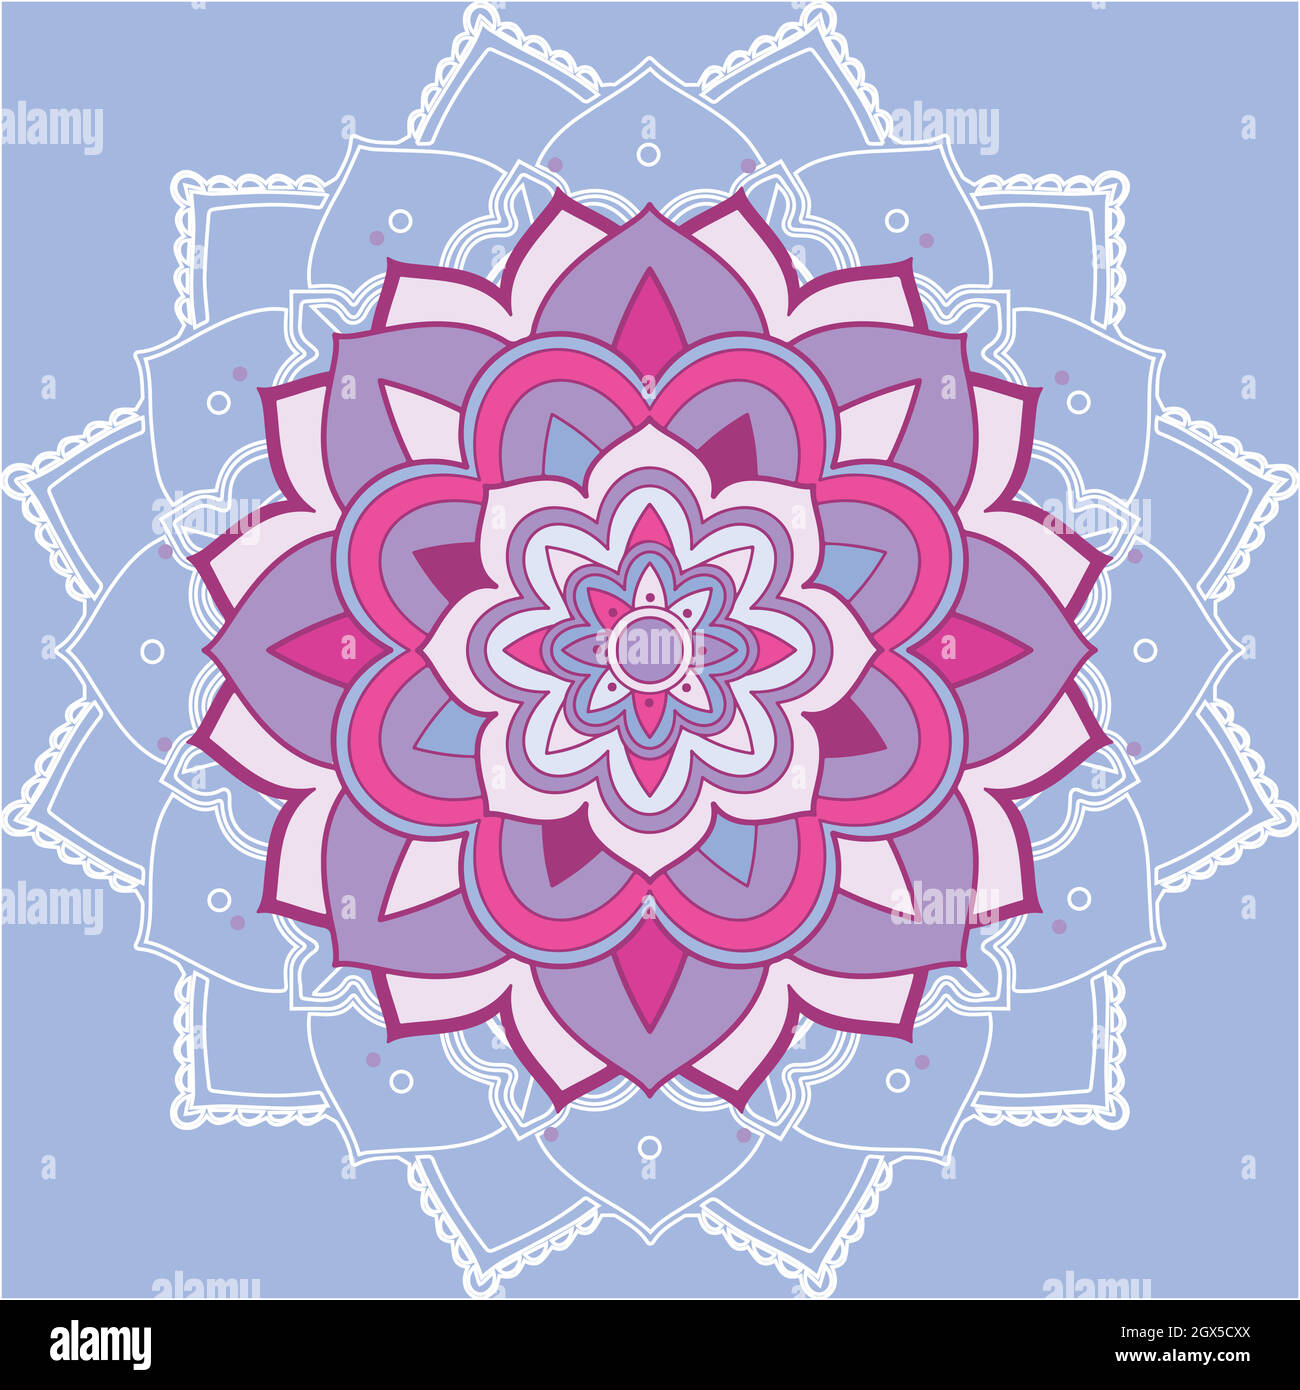 Motifs Mandala sur fond violet Illustration de Vecteur